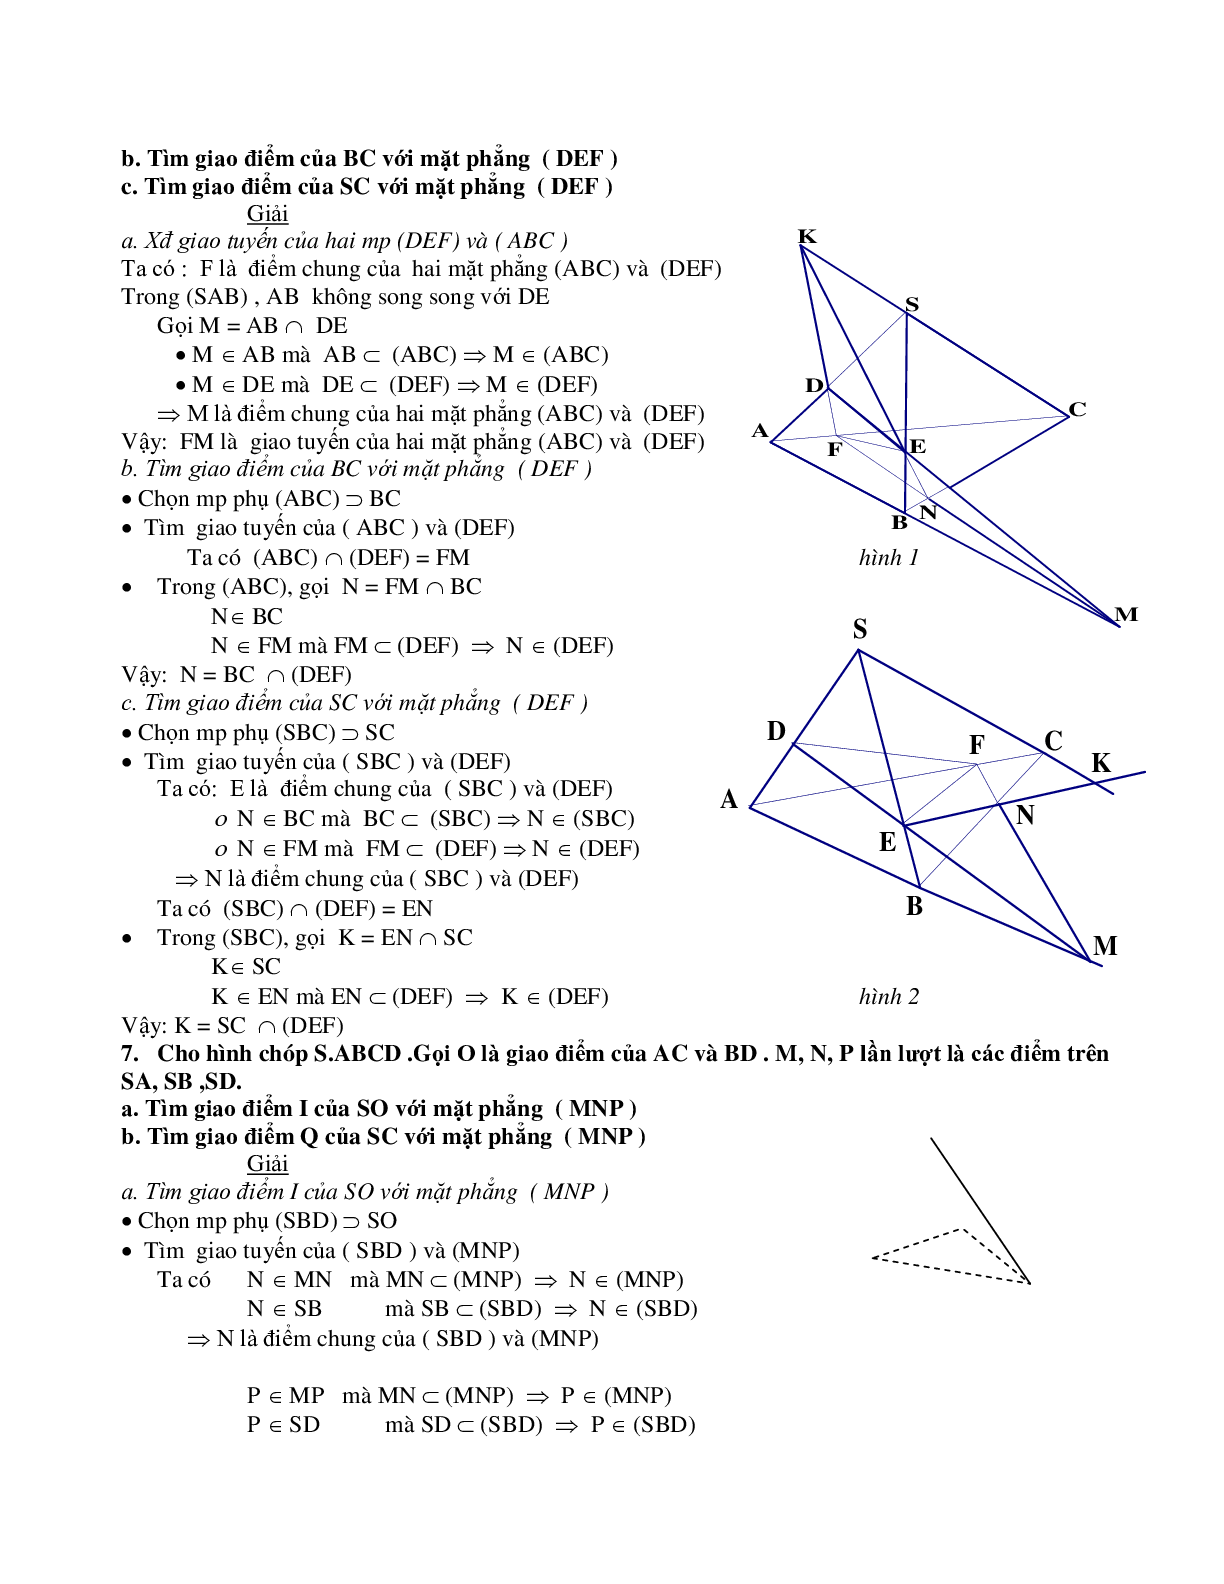 Phương pháp xác định giao điểm – giao tuyến – thiết diện trong không gian (trang 7)